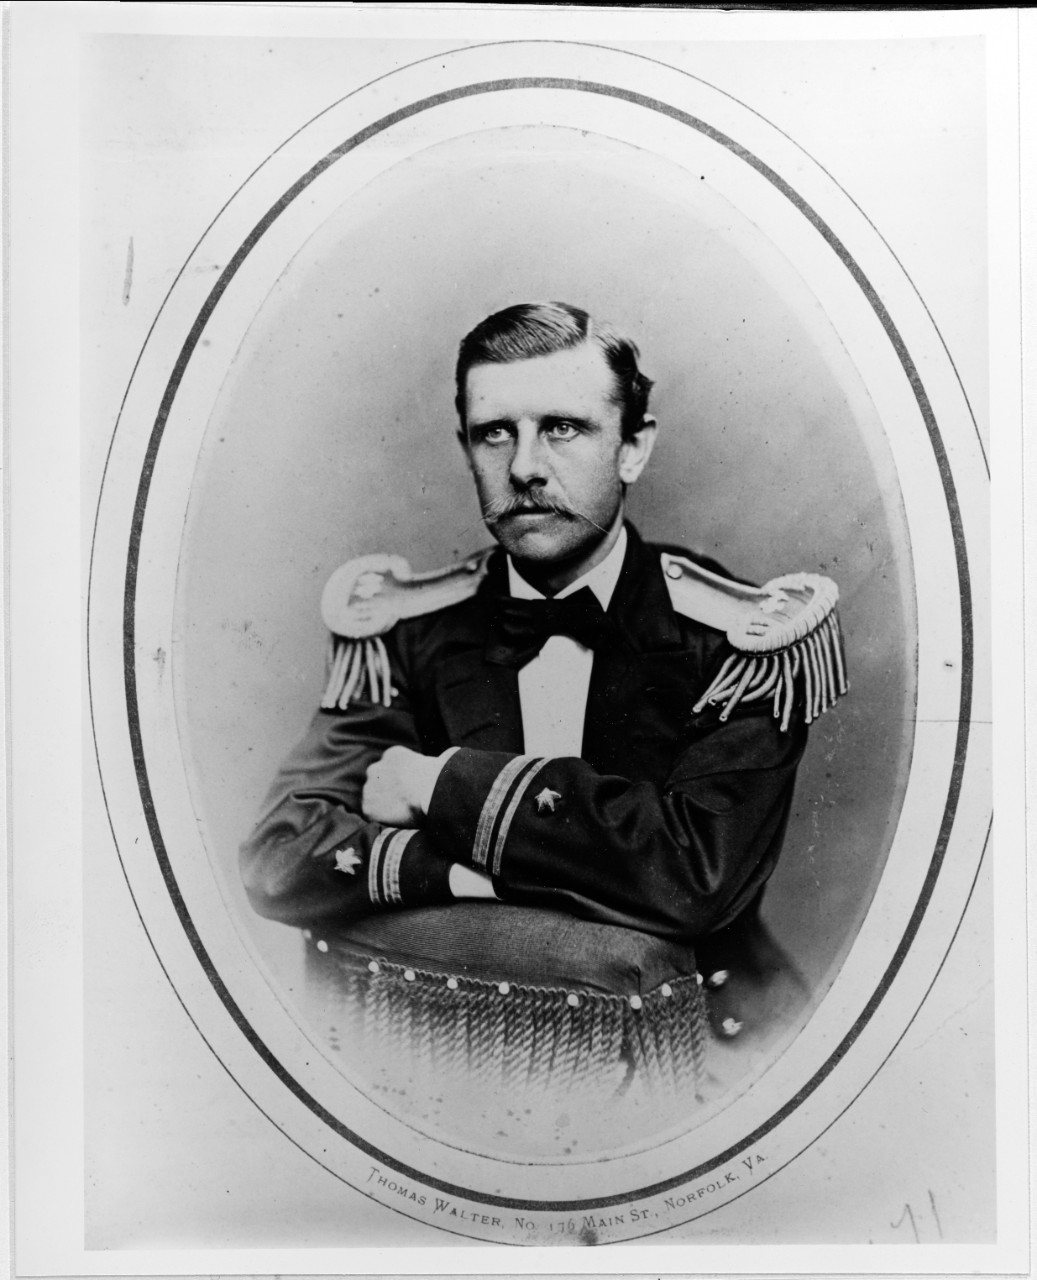 Lieutenant Oscar W. Farenholt, USN